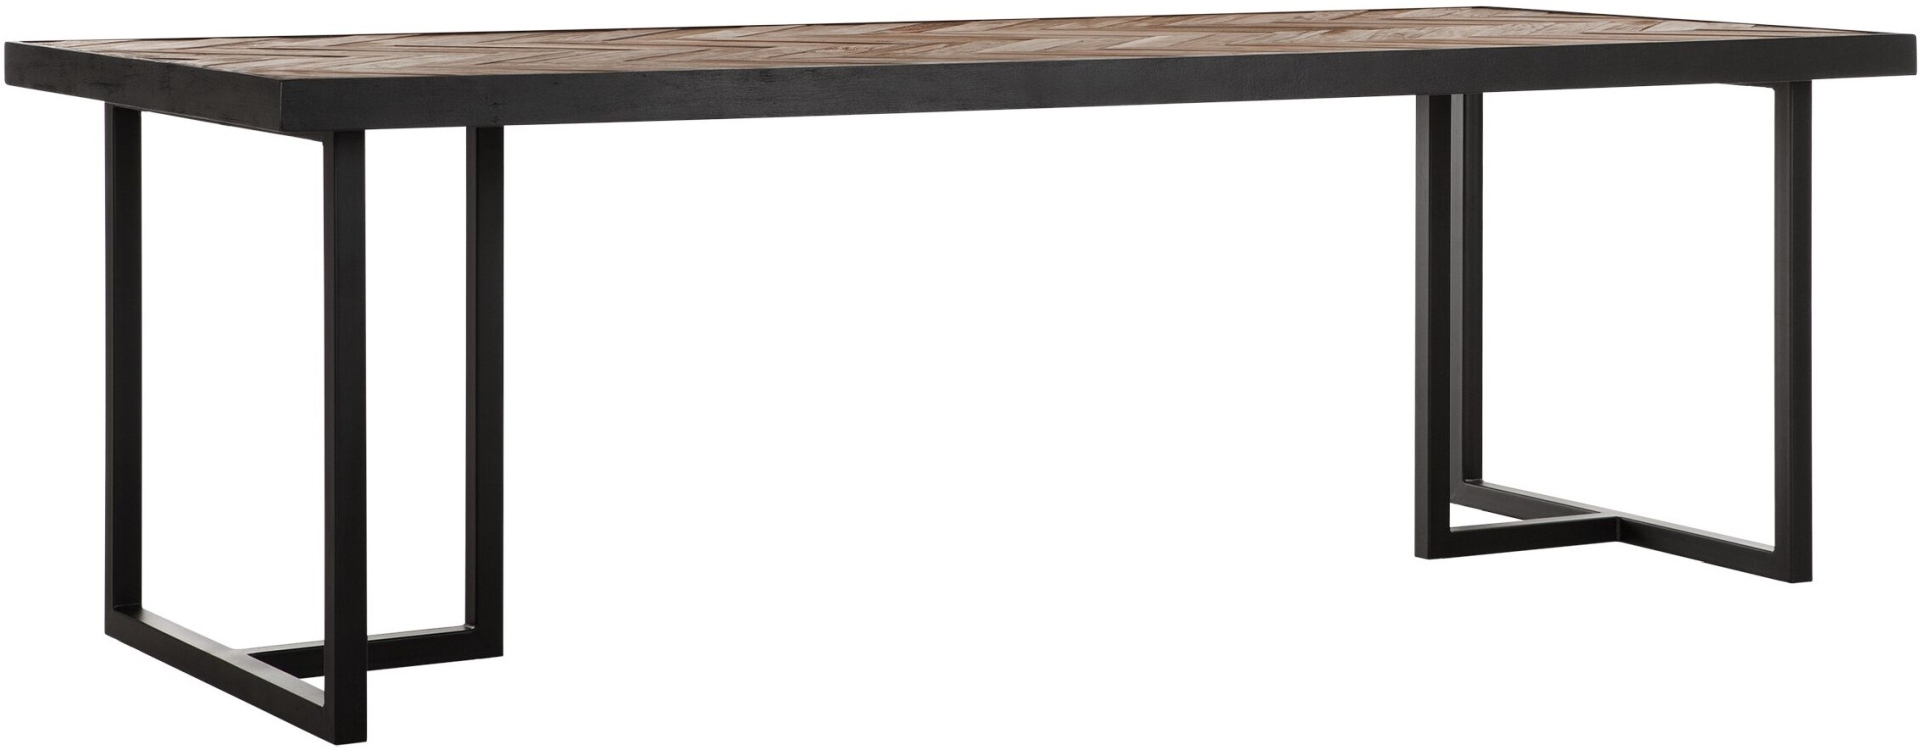 Der Esstisch Criss Cross überzeugt mit seinem massivem aber auch modernem Design. Gefertigt wurde er aus verschiedenen Holzarten, welche einen natürlichen und schwarzen Farbton besitzen. Der Tisch hat eine Länge von 160 cm.